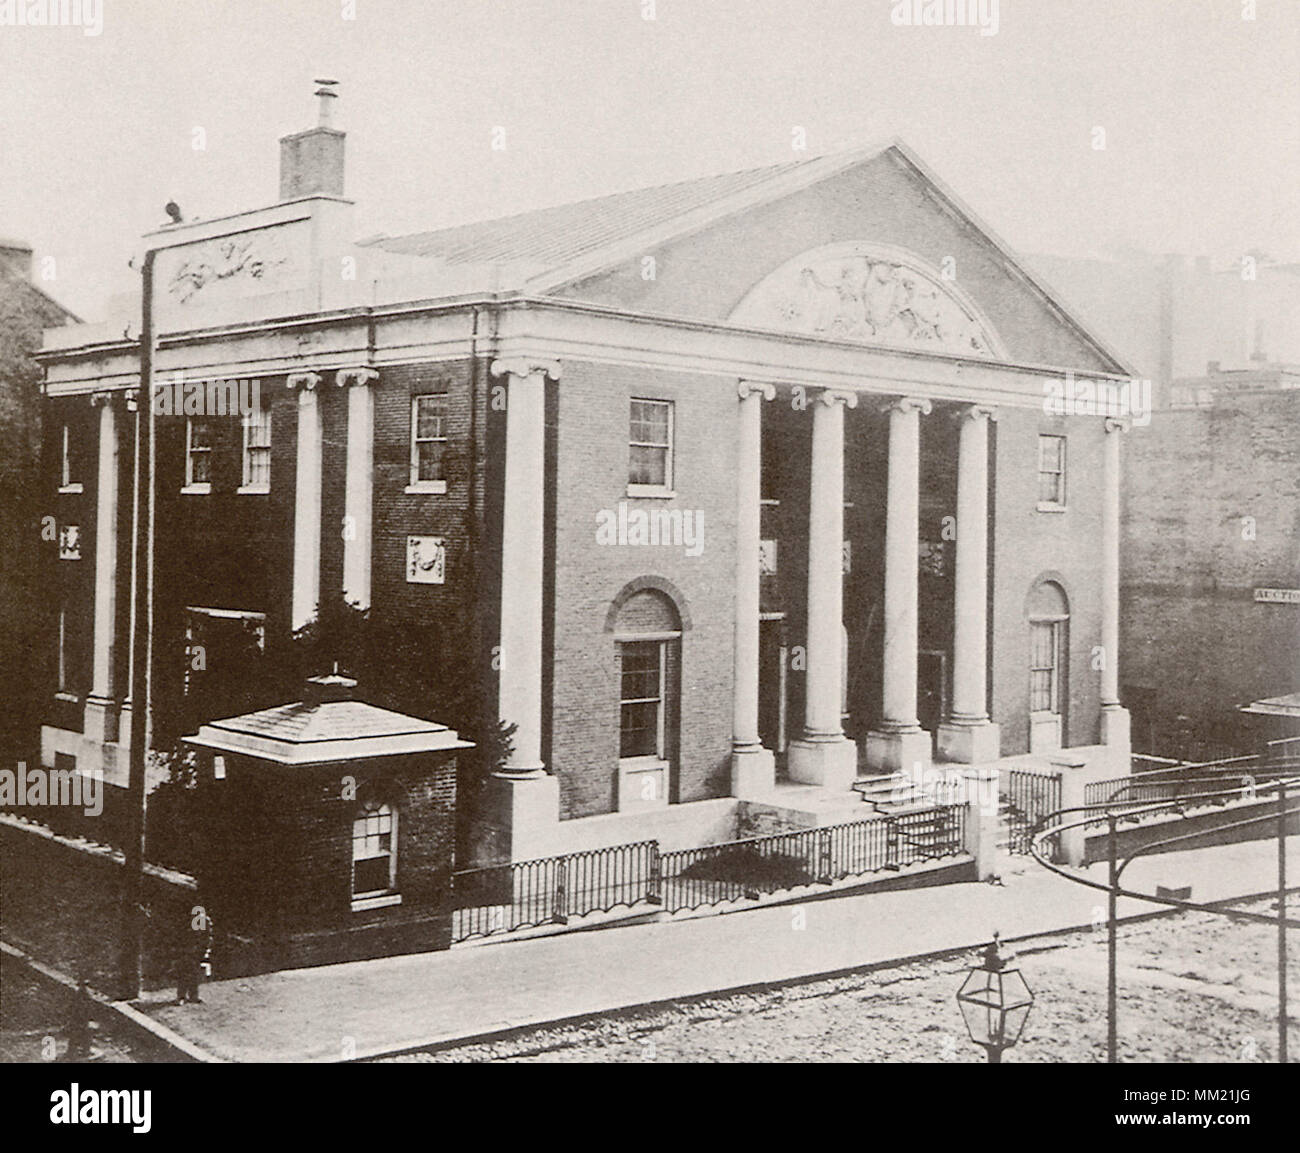 Banque de l'Union européenne. Baltimore. 1880 Banque D'Images